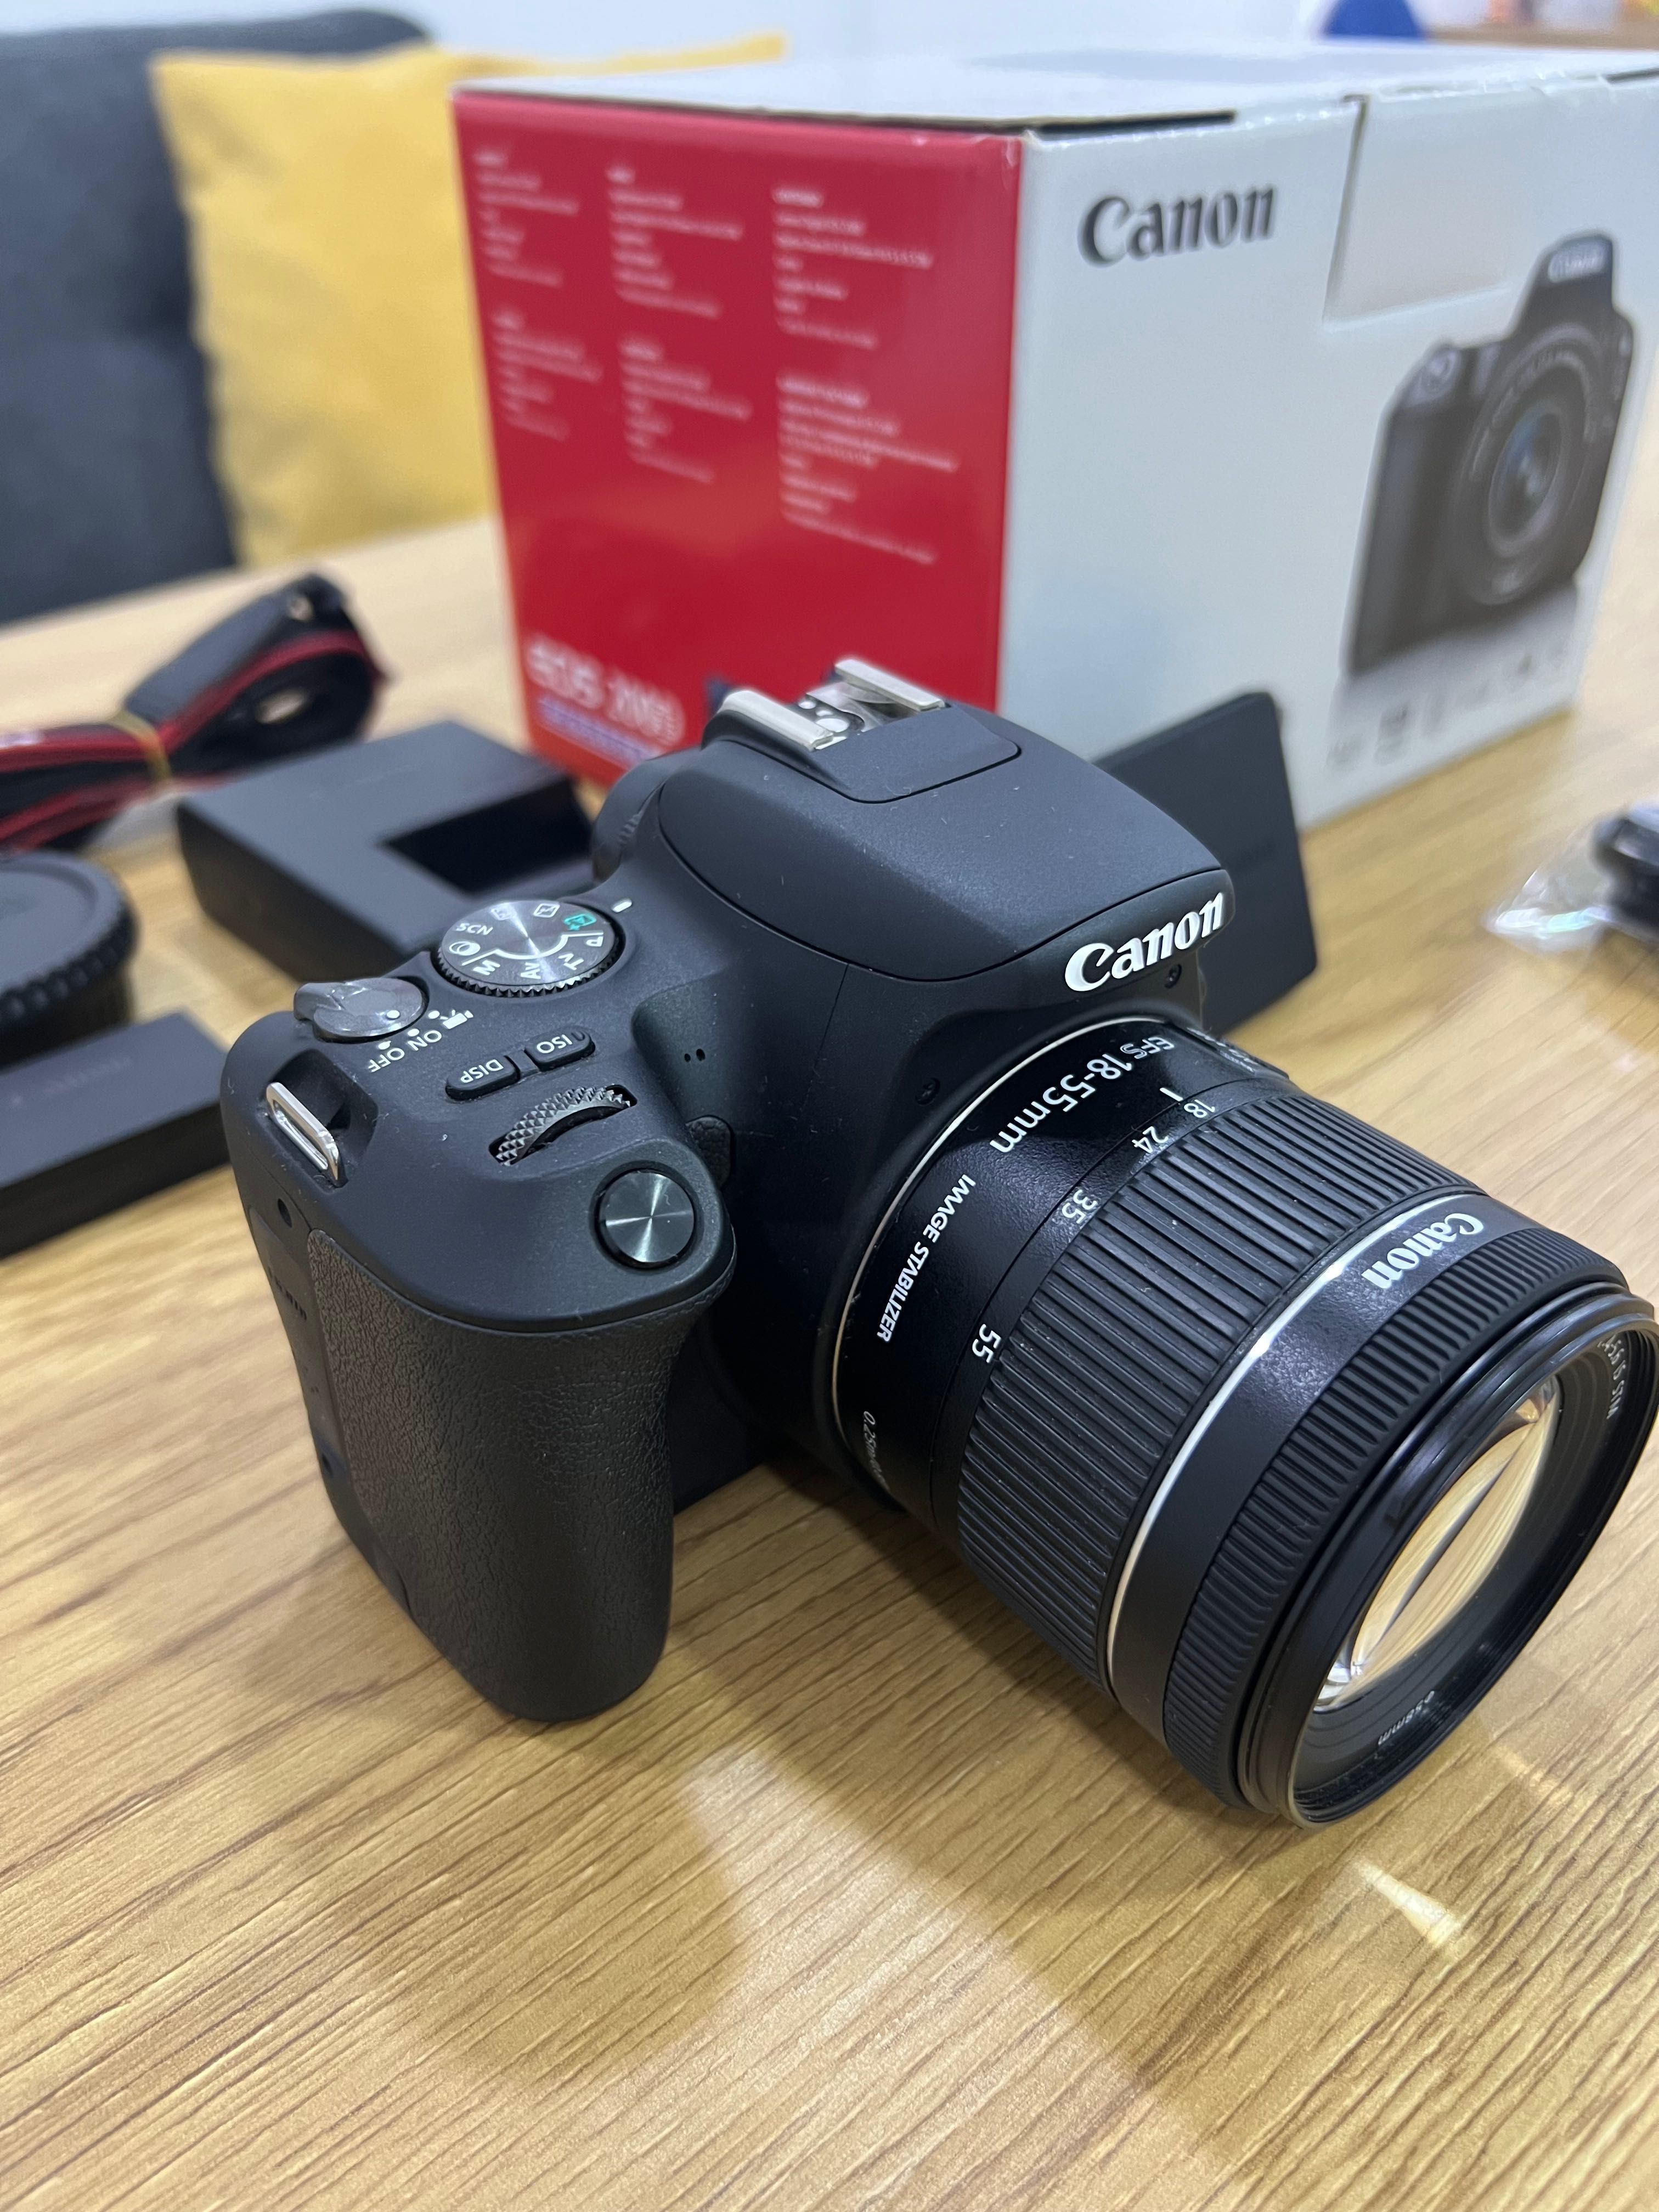 Canon  EOS  200D